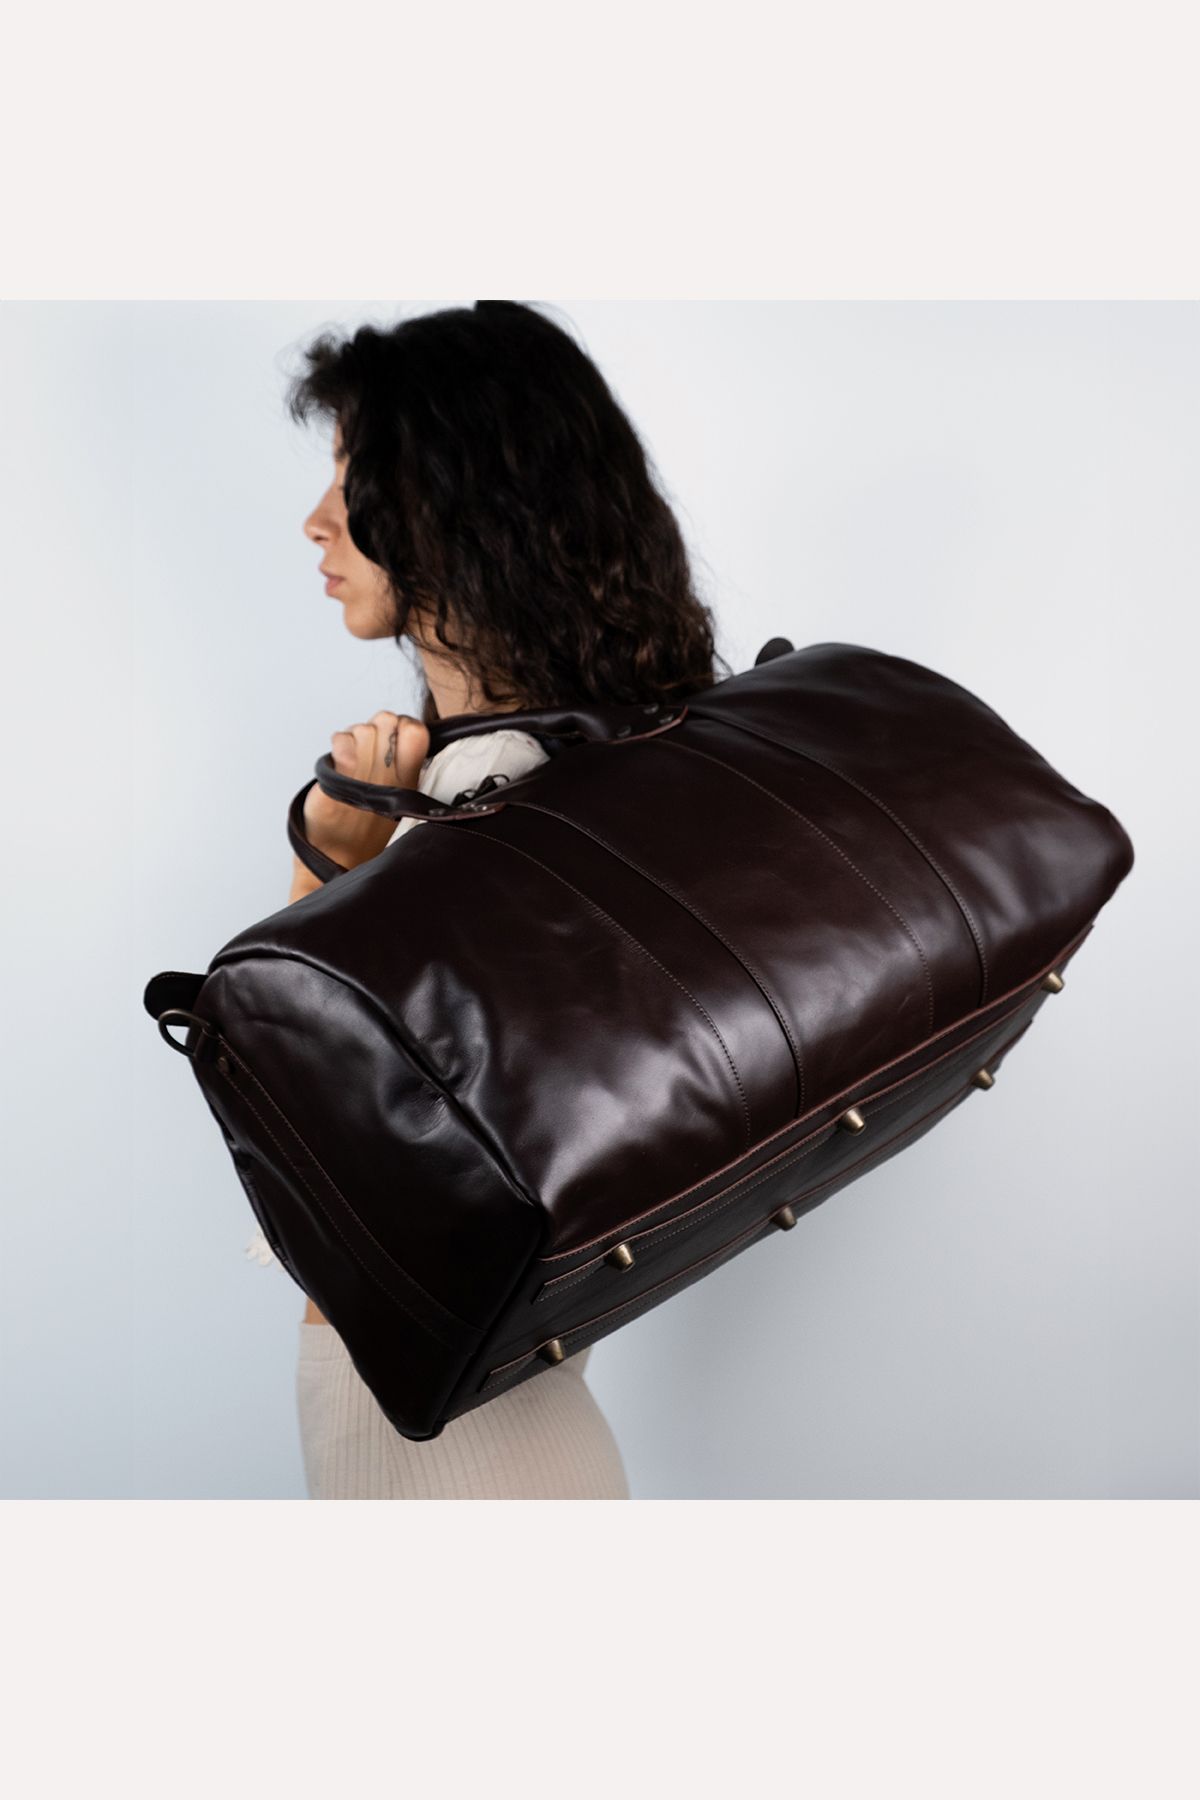 Monte Cristo Deri Unisex Valiz/bavul %100 Hakiki Deri seyahat çantası-kabin boy